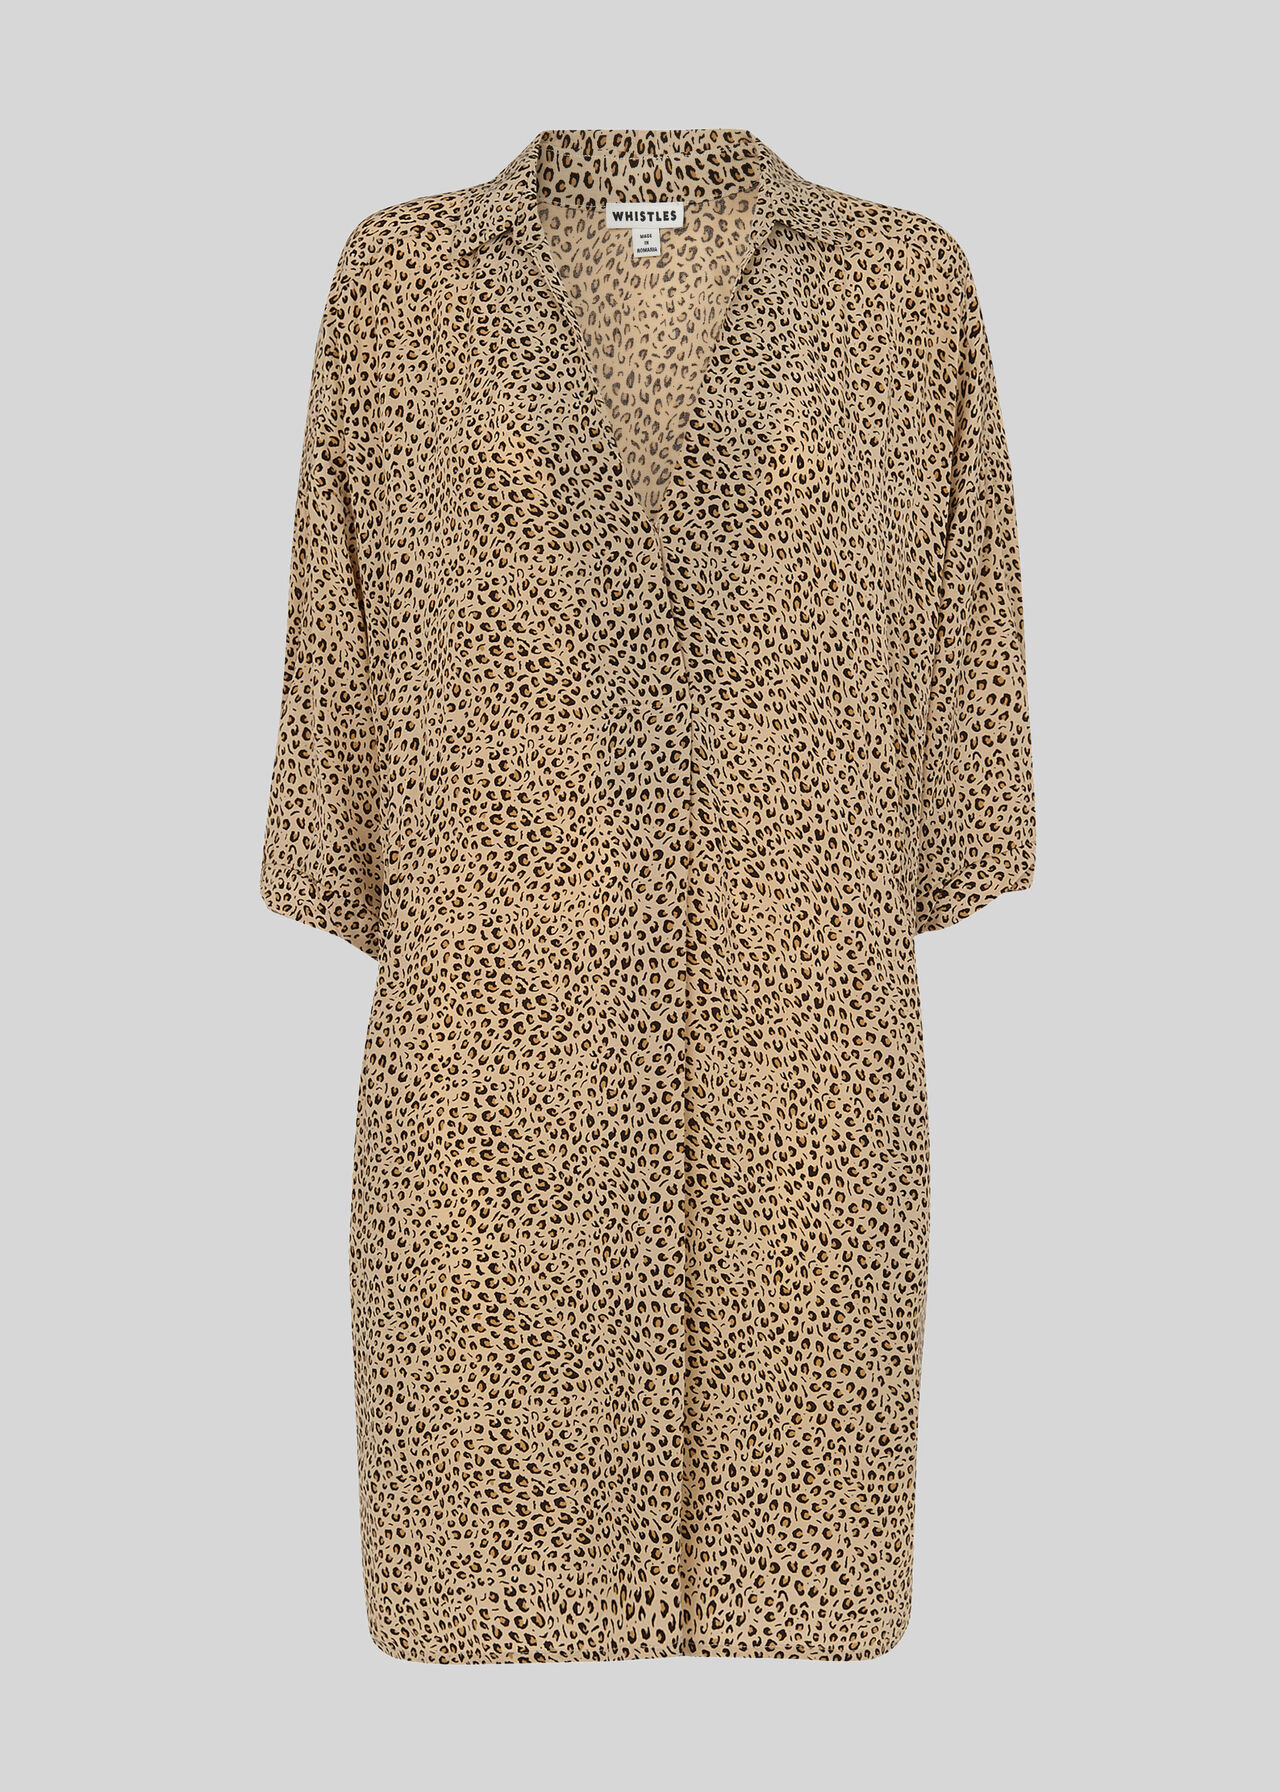 Mini Leopard Lola Dress Leopard Print